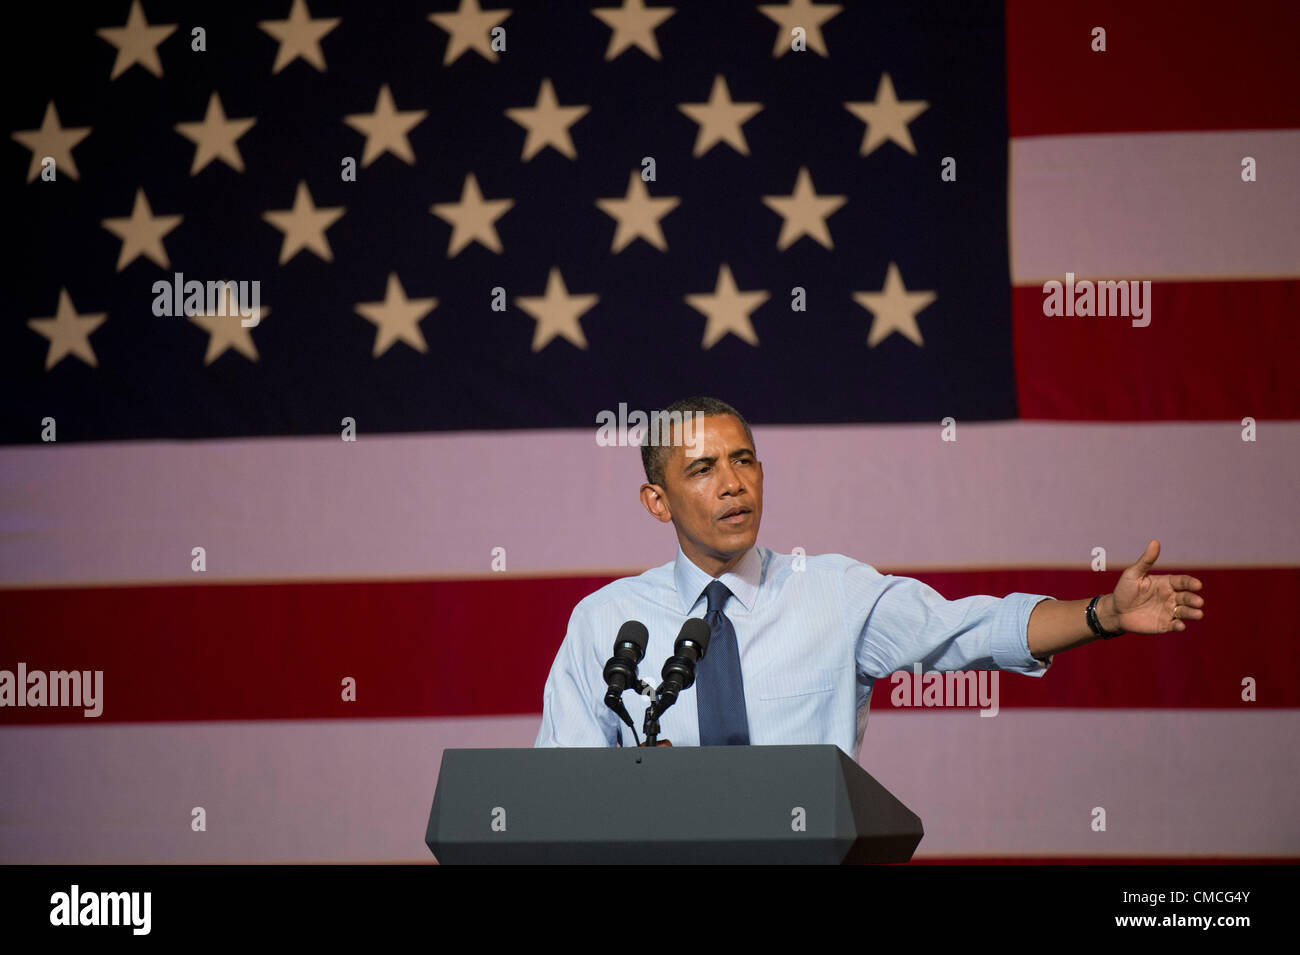 US-Präsident Barack Obama macht eine Texas-Kampagne Dienstag Nacht in Austin Music Hall während der Kampagne 2012 zu stoppen Stockfoto